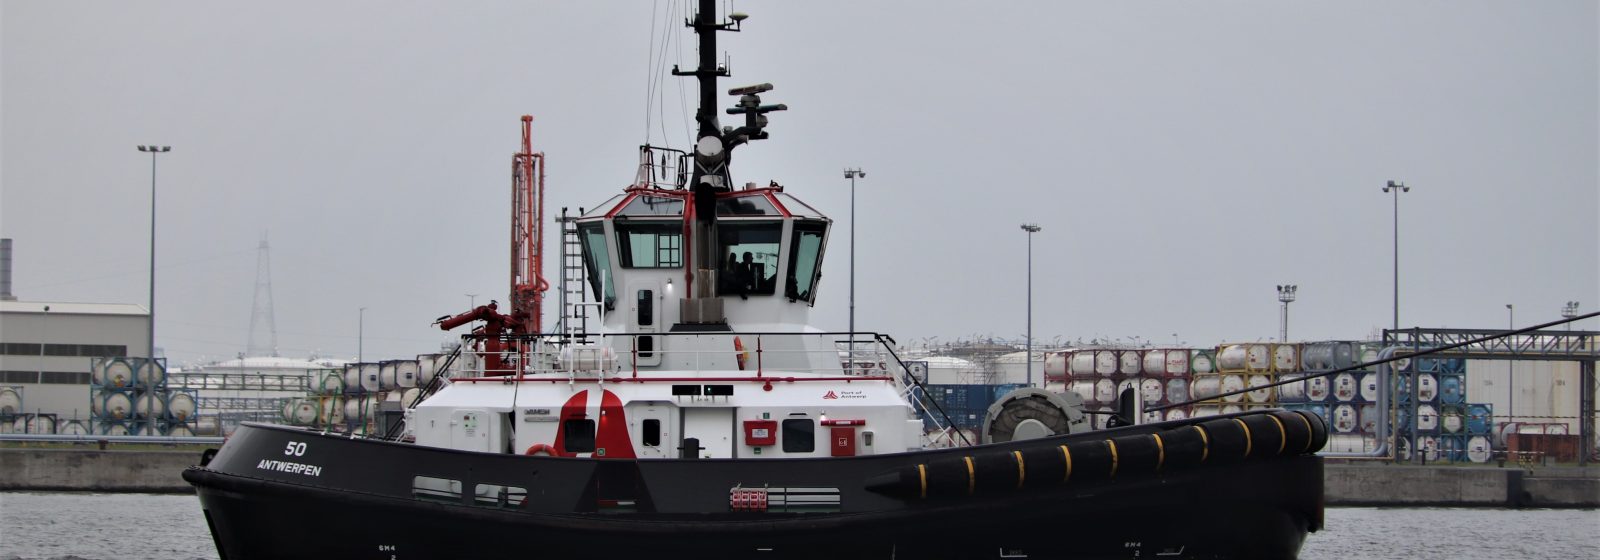 Stadssleepboot Antwerpen